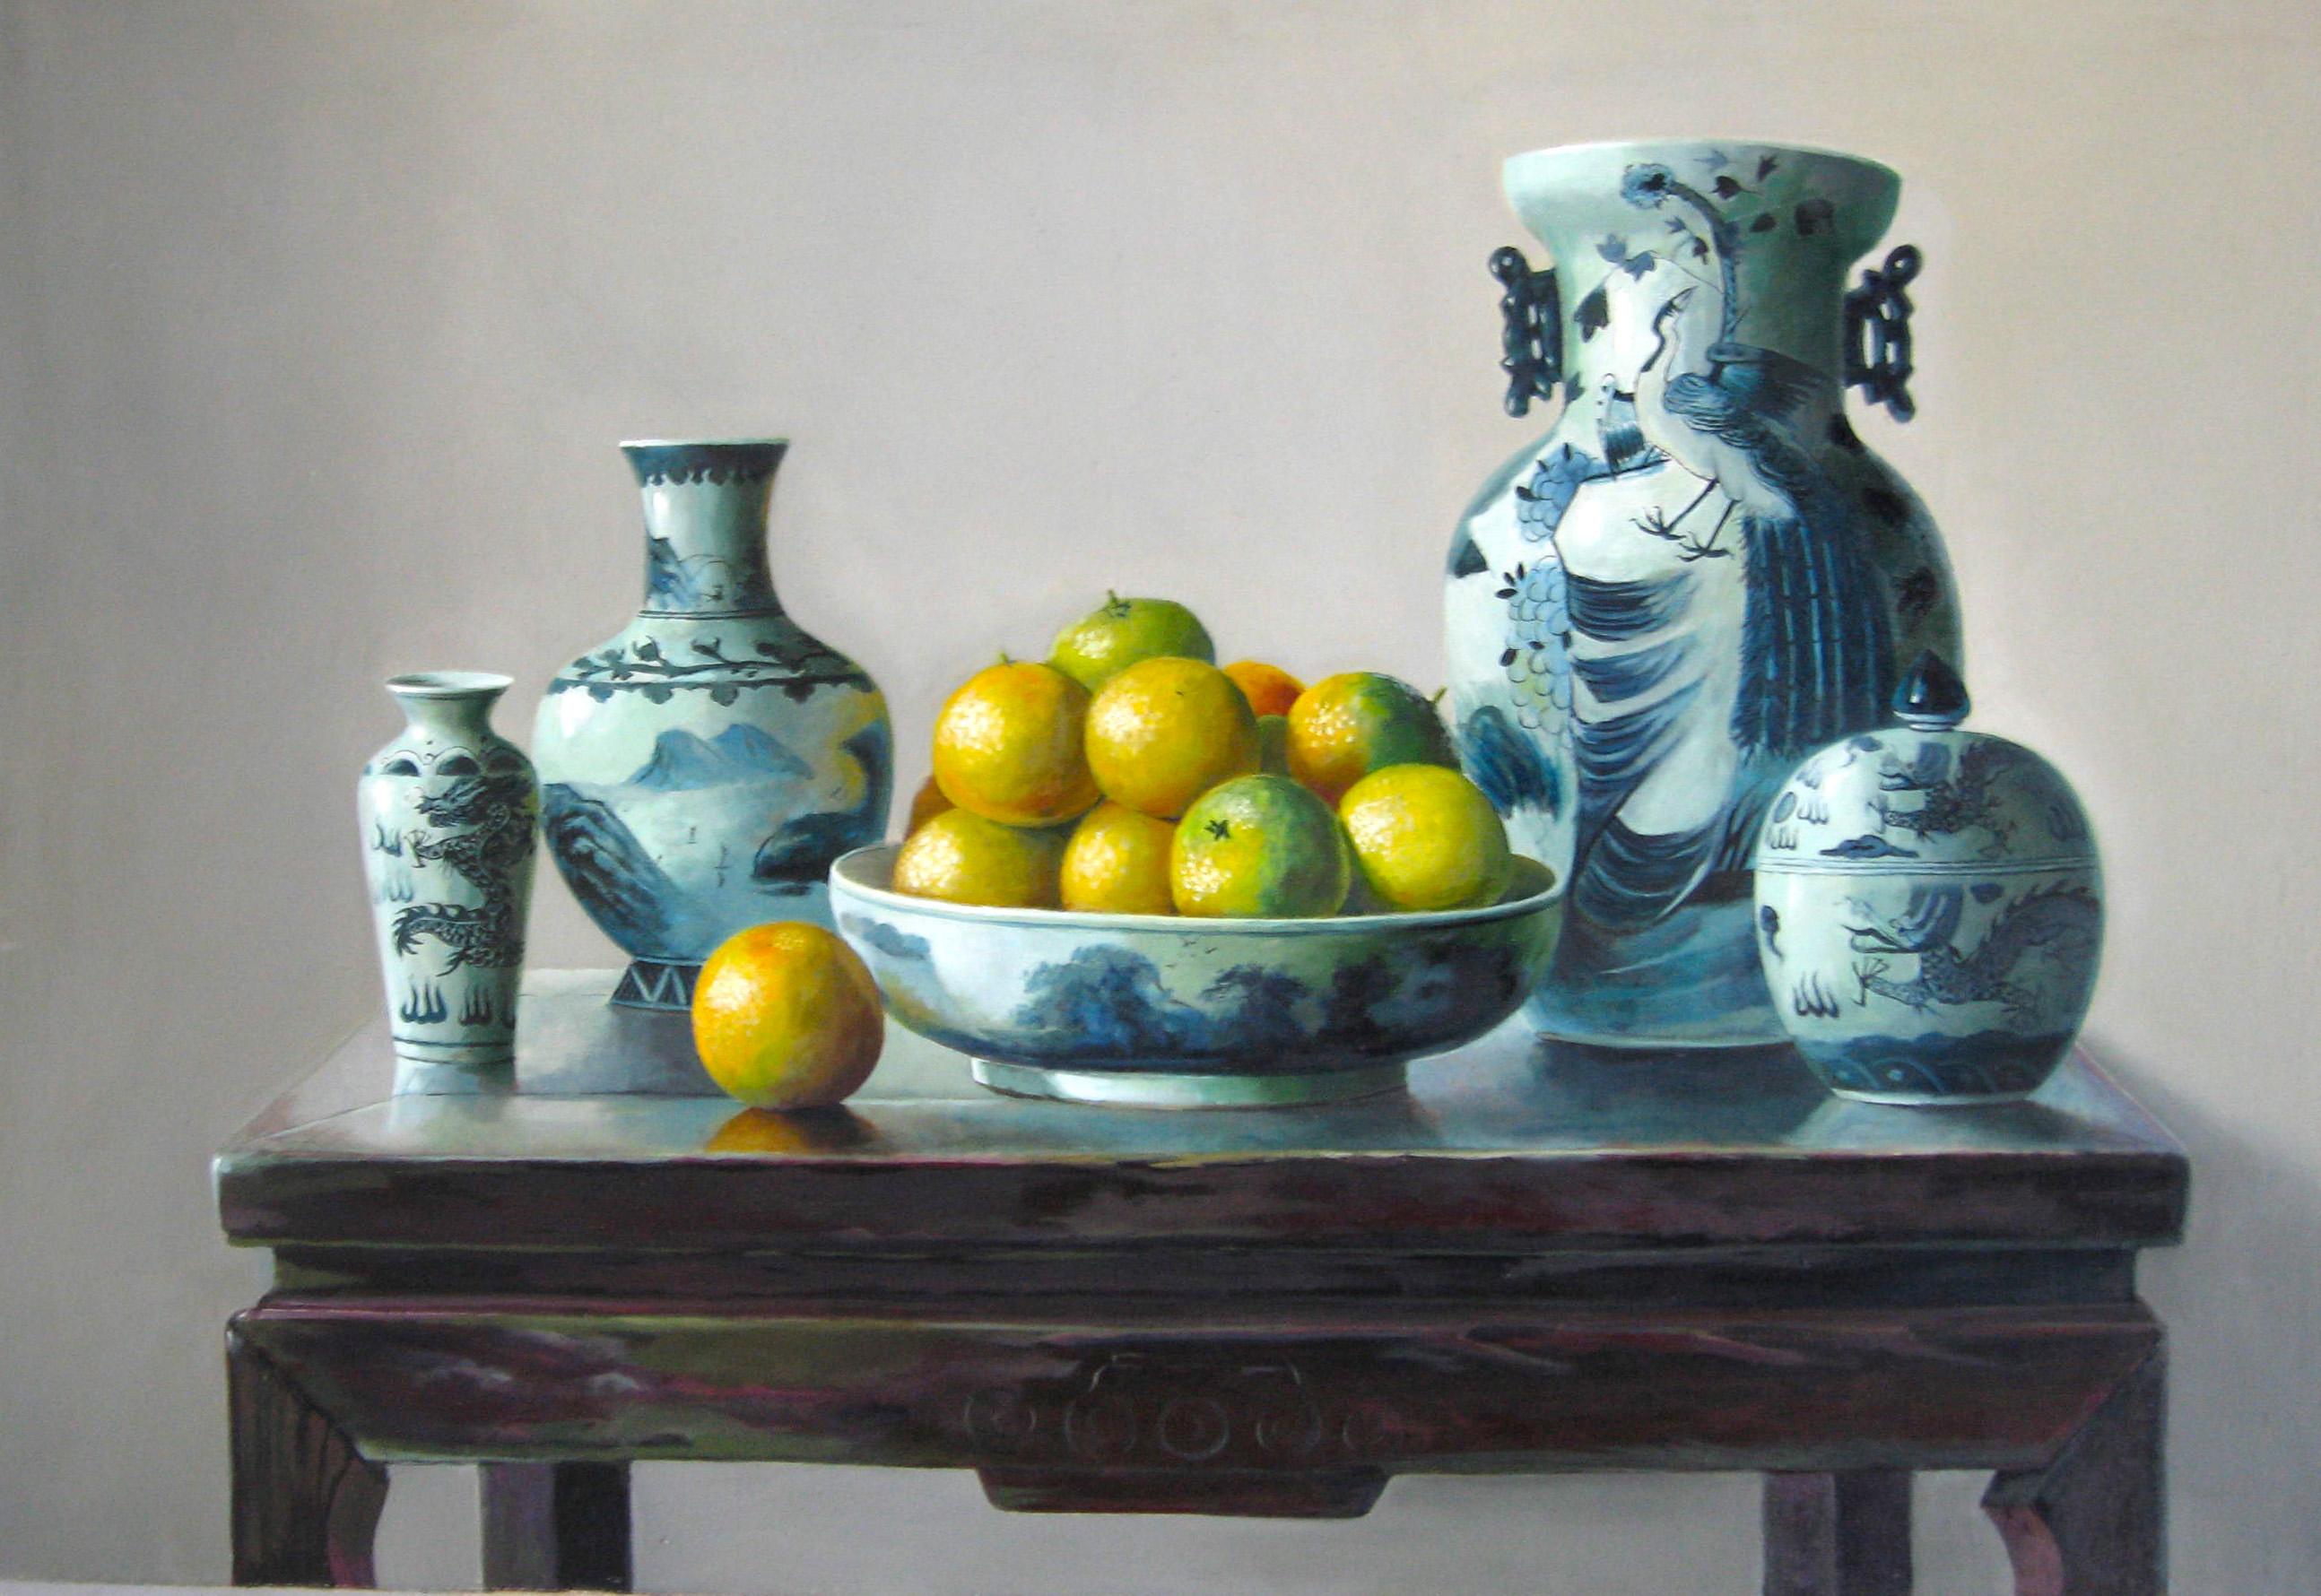 Oranges est une huile sur toile originale réalisée par le peintre chinois Zhang Wei Guang (Miroir) en 19998.
Excellentes conditions.

Zhang Wei Guang, également appelé "miroir", est né à Helong Jang, en Chine, en 1968. Il a étudié à l'université des